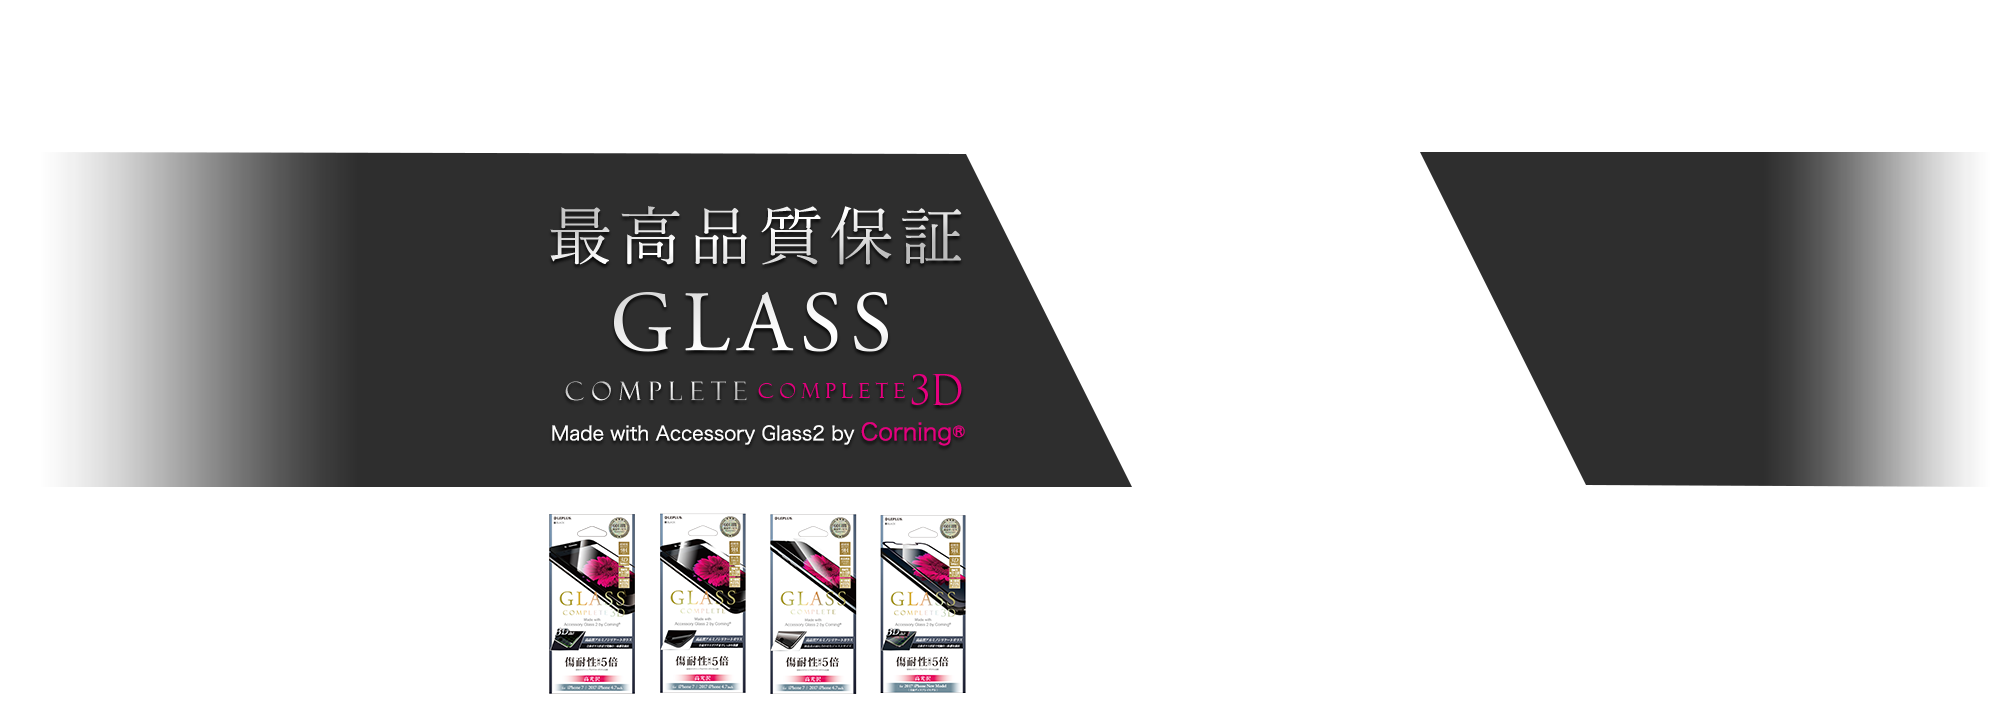 最高品質保証 GLASS COMPLETE / COMPLETE 3D　Made with Accessory Glass2 by Corning®